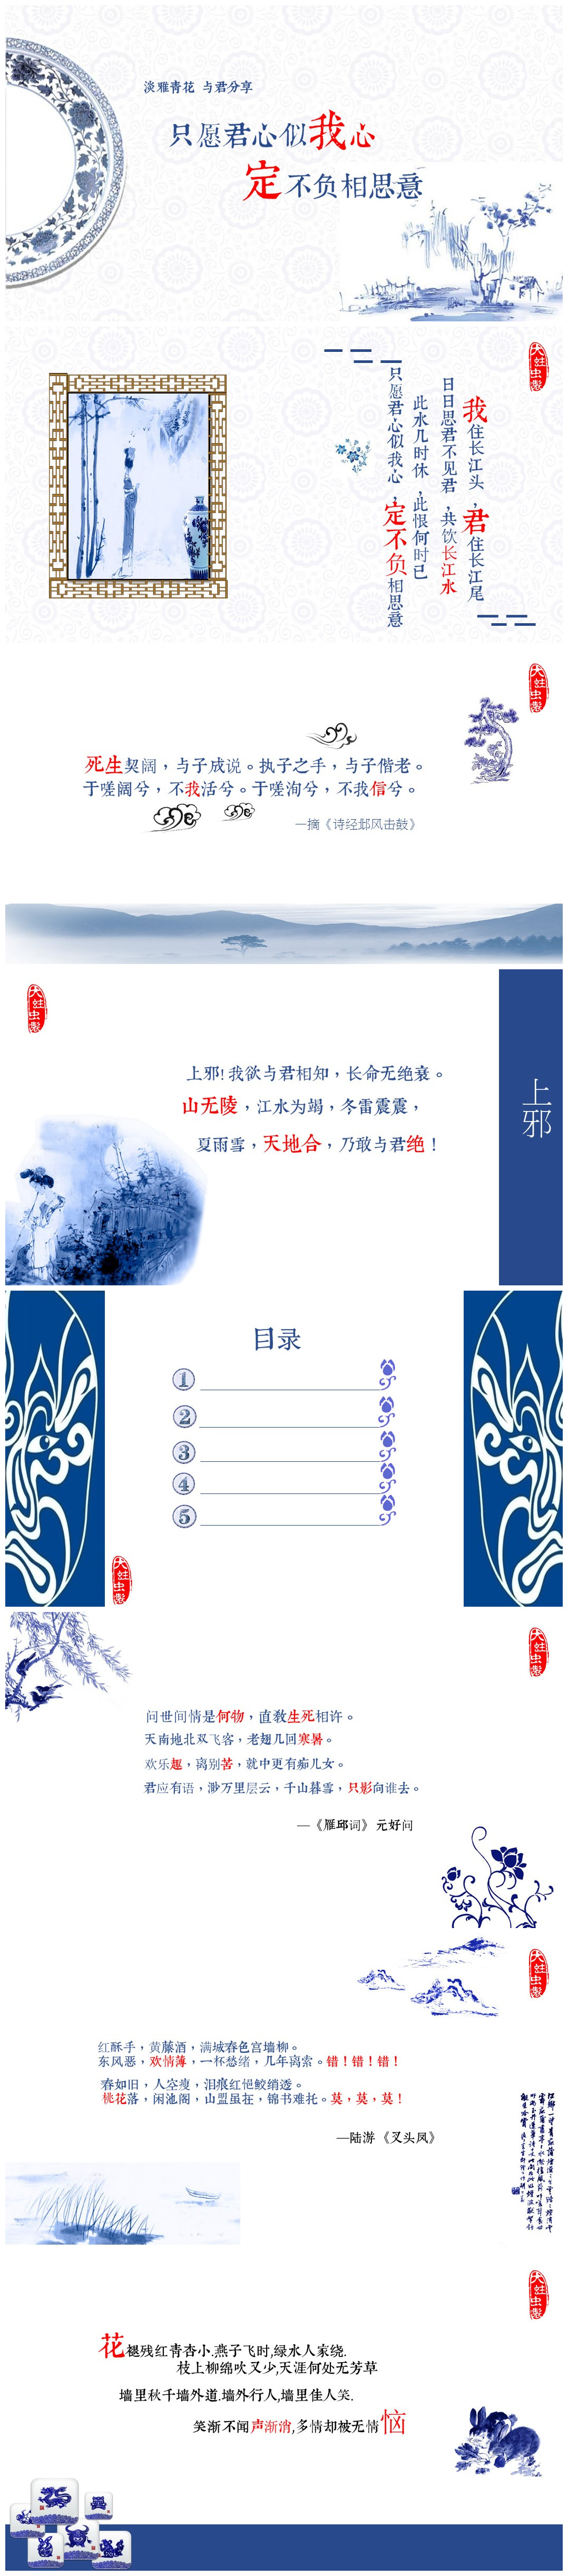 淡雅青花瓷古典中国风经典PPT模板下载-聚给网